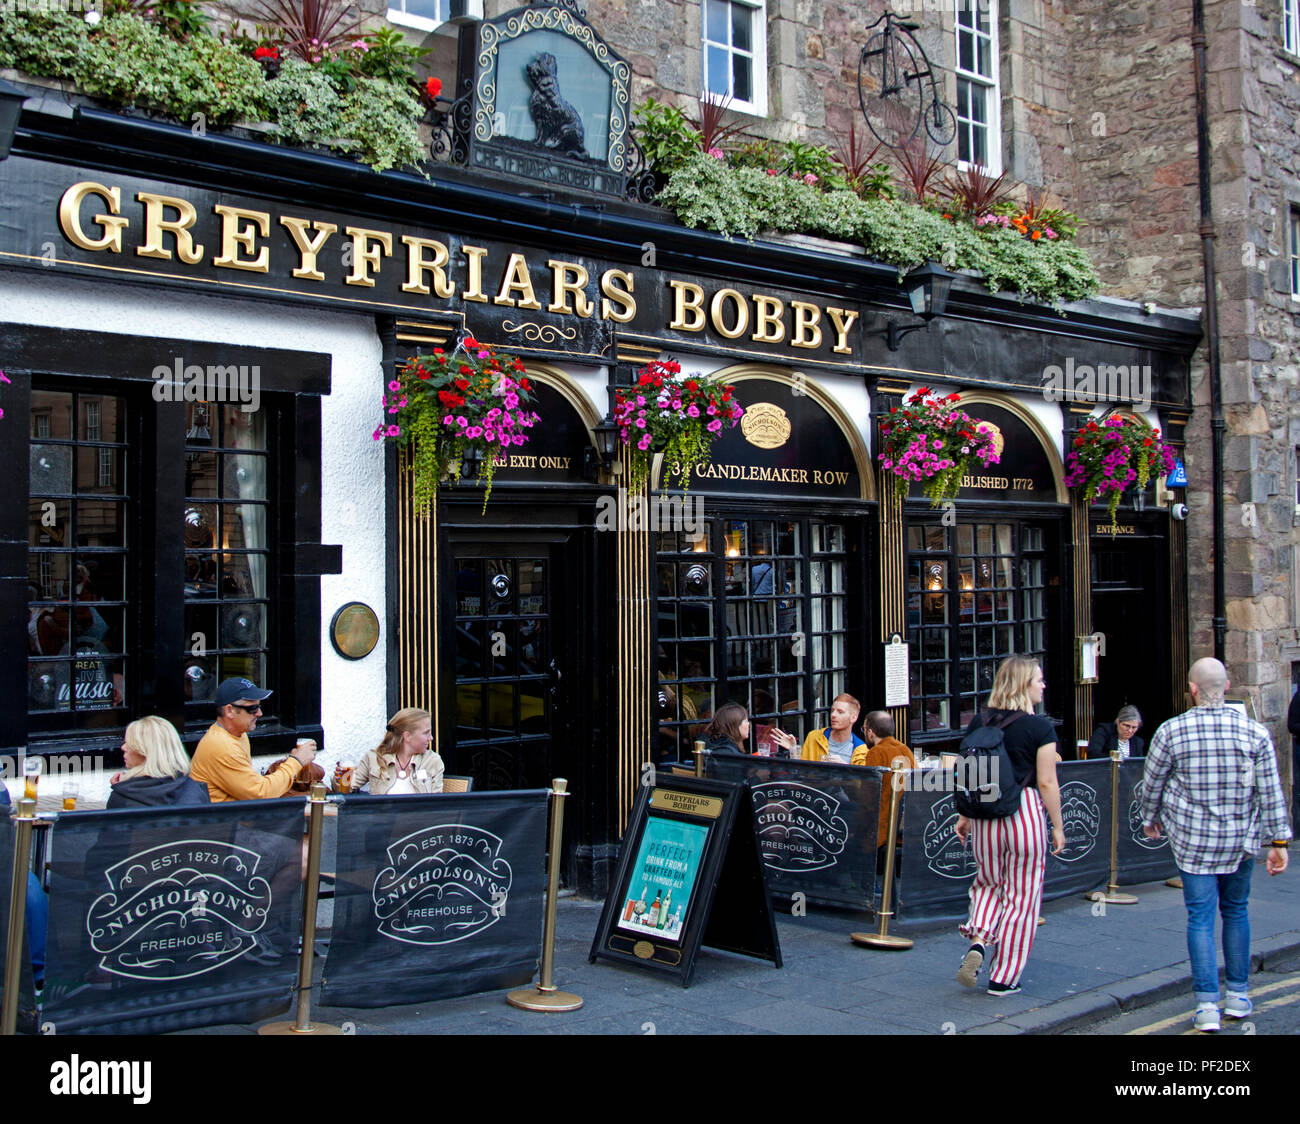 Grayfriar Bobby's pub, Édimbourg, Écosse, Royaume-Uni Banque D'Images